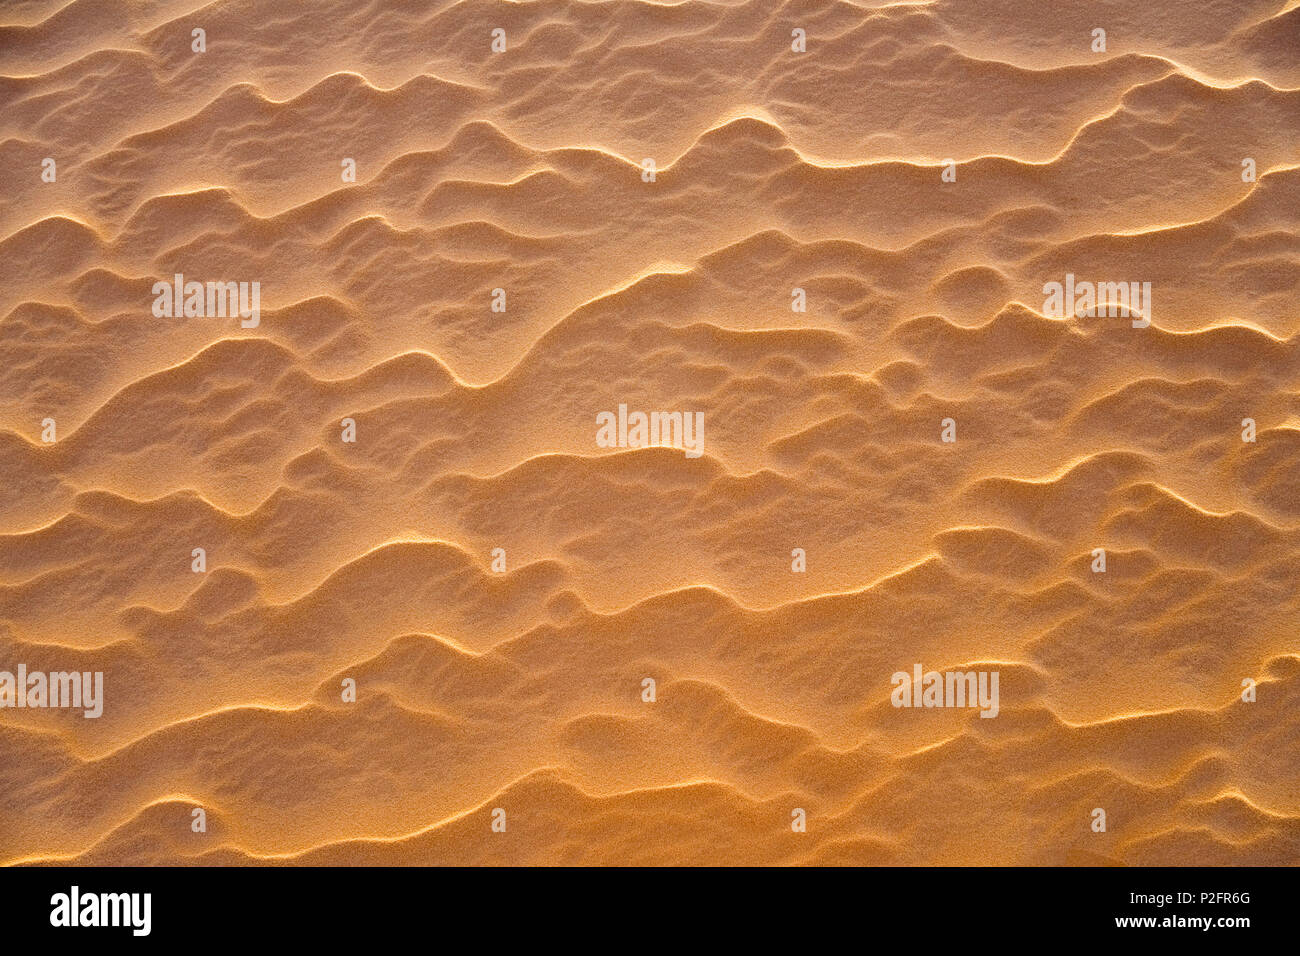 Patrones, estructuras en el Sanddunes del desierto libio, el Sahara, Libia, Norte de África Foto de stock